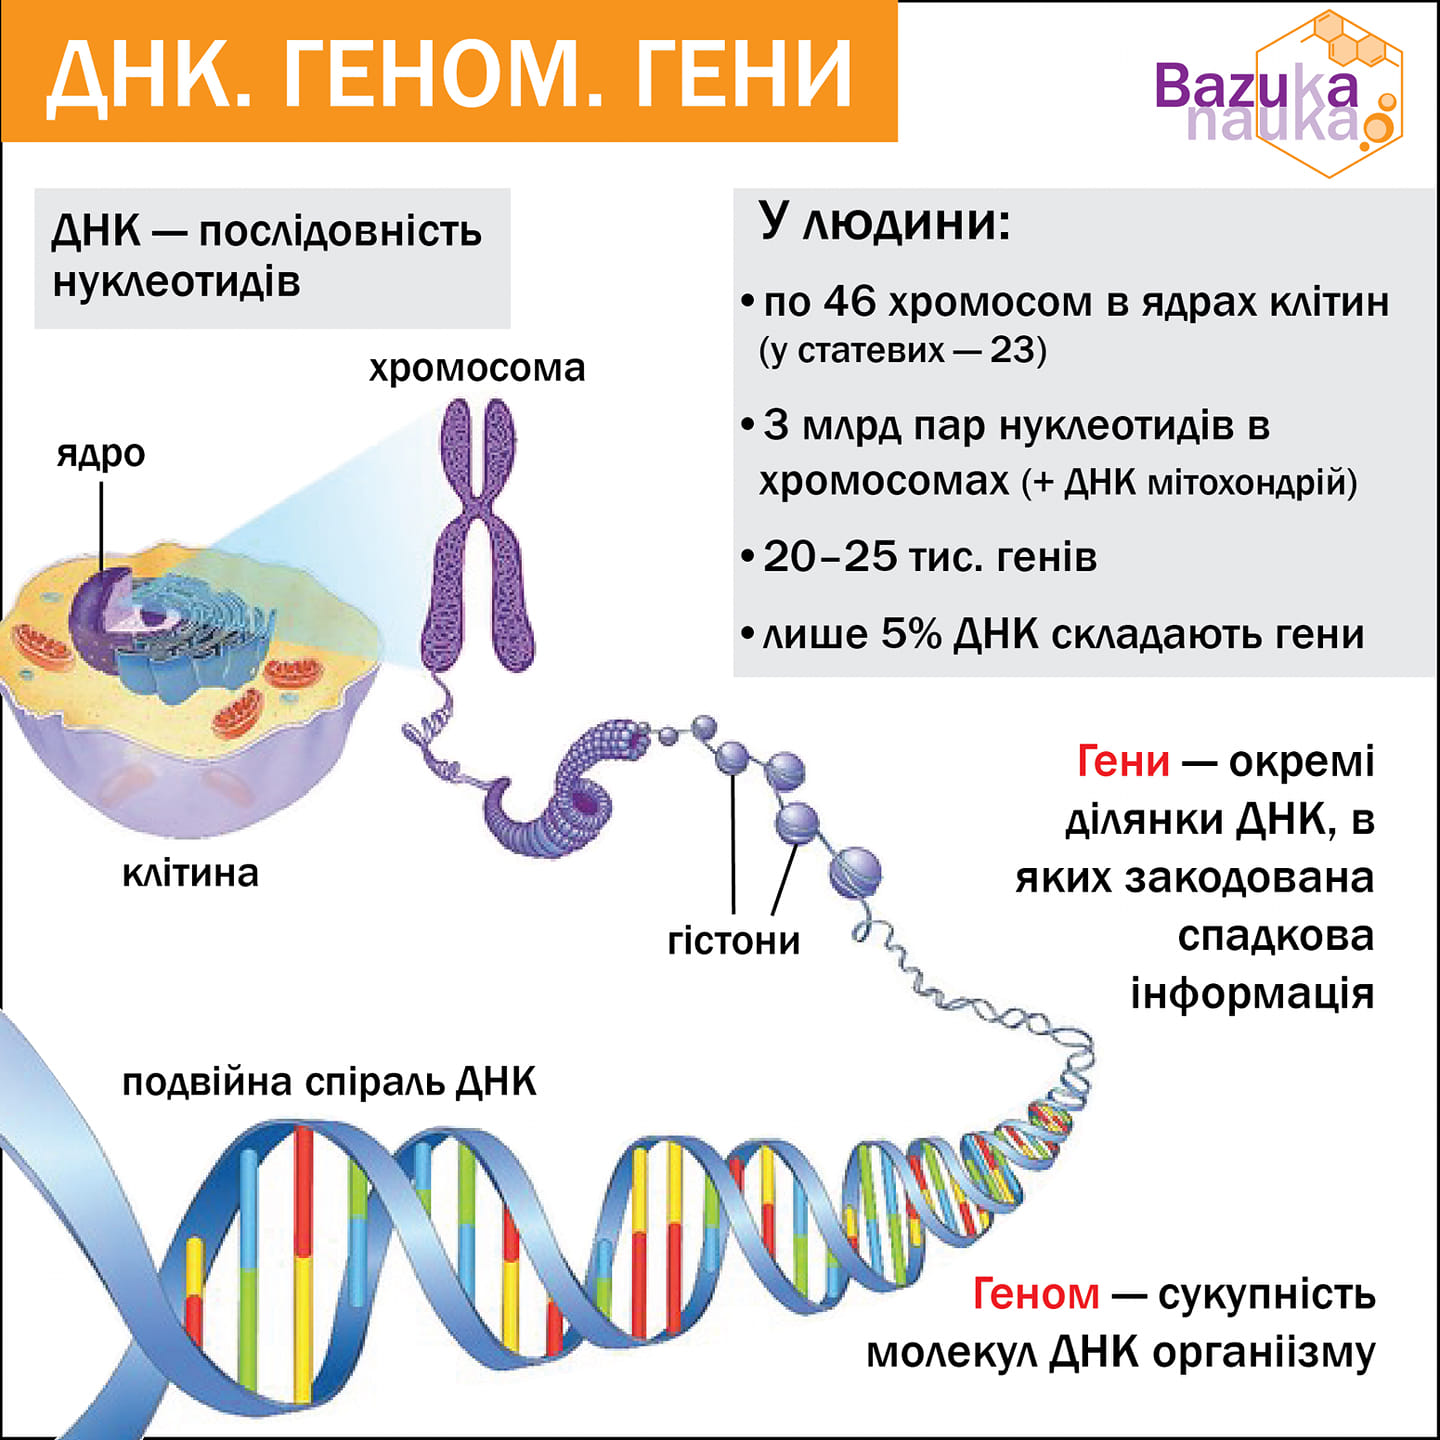 23 хромосомы у человека в клетках. ДНК И хромосомы. Гены и хромосомы. Клетка ДНК. Генетический материал человека.